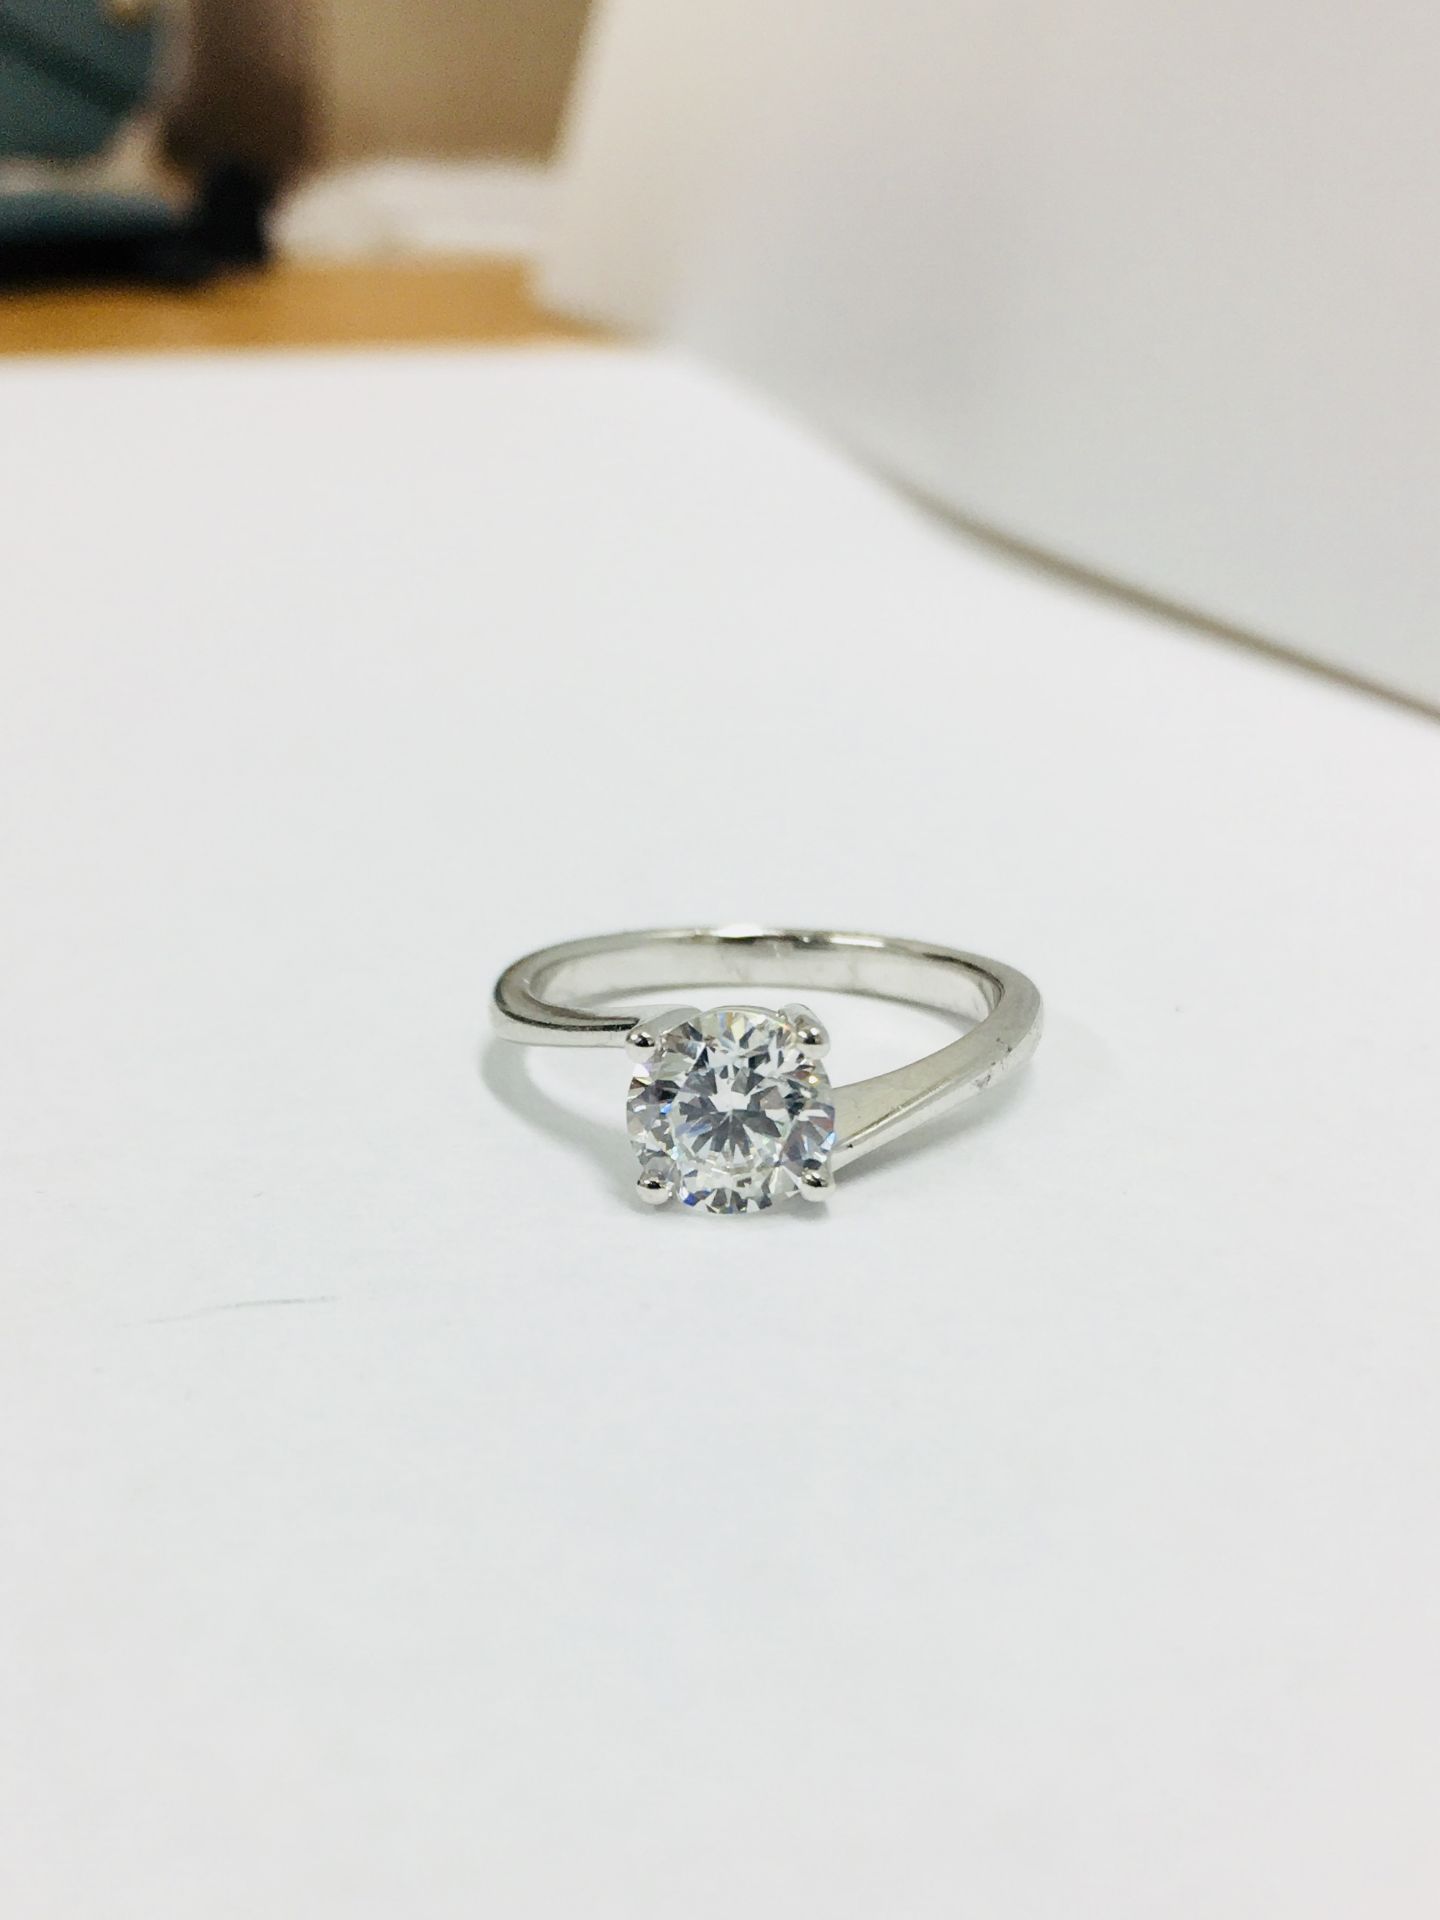 platinum twist solitaire ring,0.50ct brilliant cut diamond vs clarity H colour(clarity enhanced),